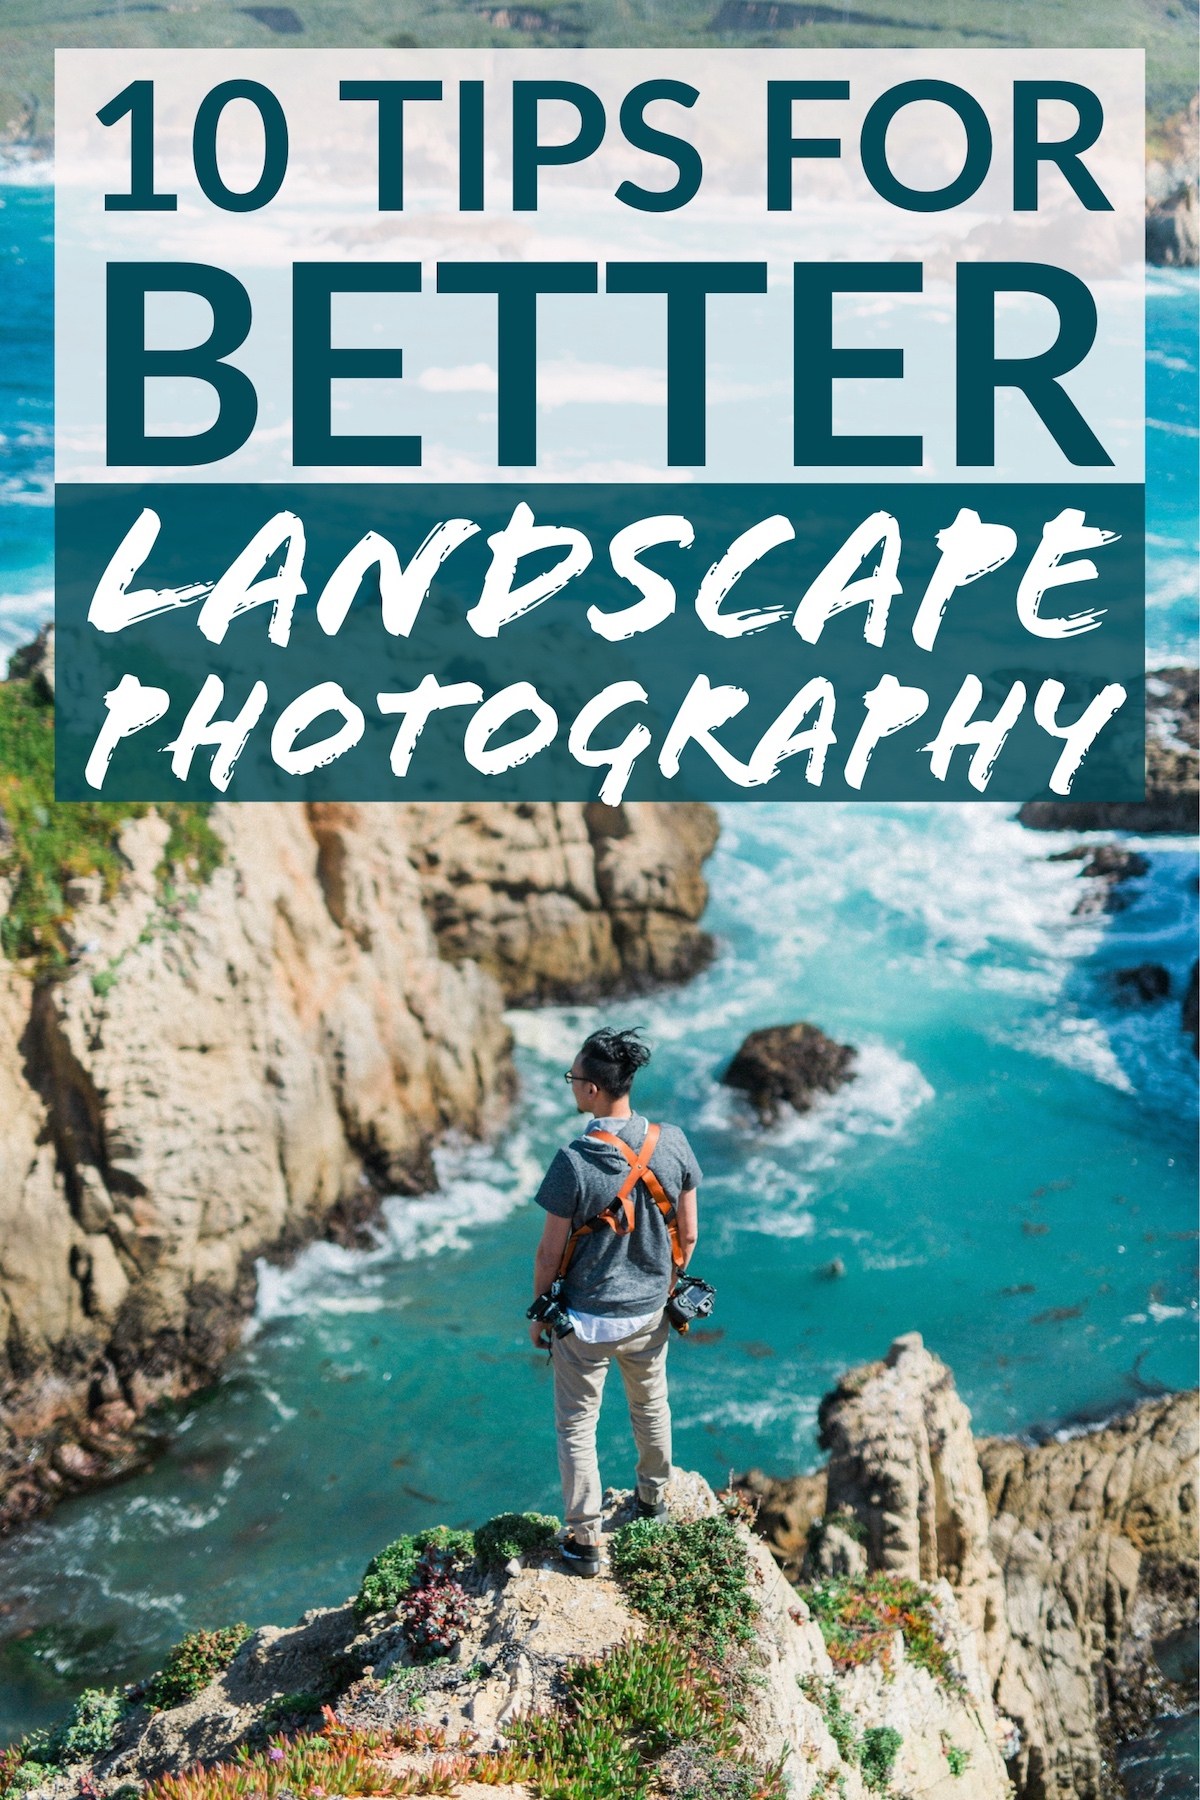 #Theo-Herbots | #Tienen | #Blog-#Natuurfotografie #Theo-Herbots | 10 tips voor een betere landschapsfotografie | 10 tips for better landscape photography